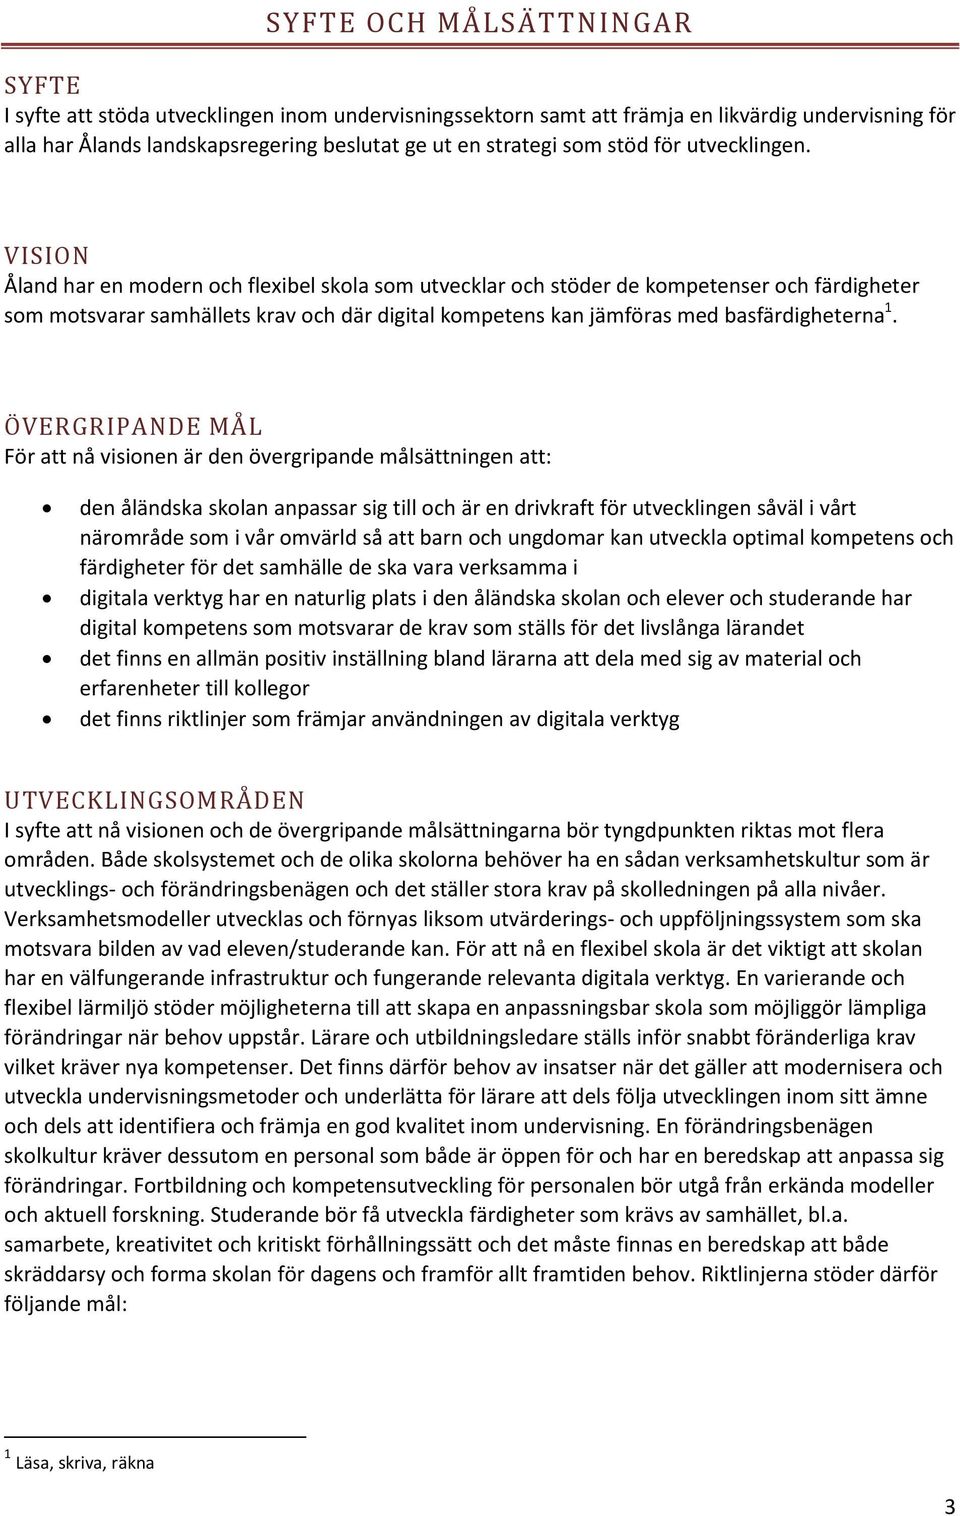 VISION Åland har en mdern ch flexibel skla sm utvecklar ch stöder de kmpetenser ch färdigheter sm mtsvarar samhällets krav ch där digital kmpetens kan jämföras med basfärdigheterna 1.